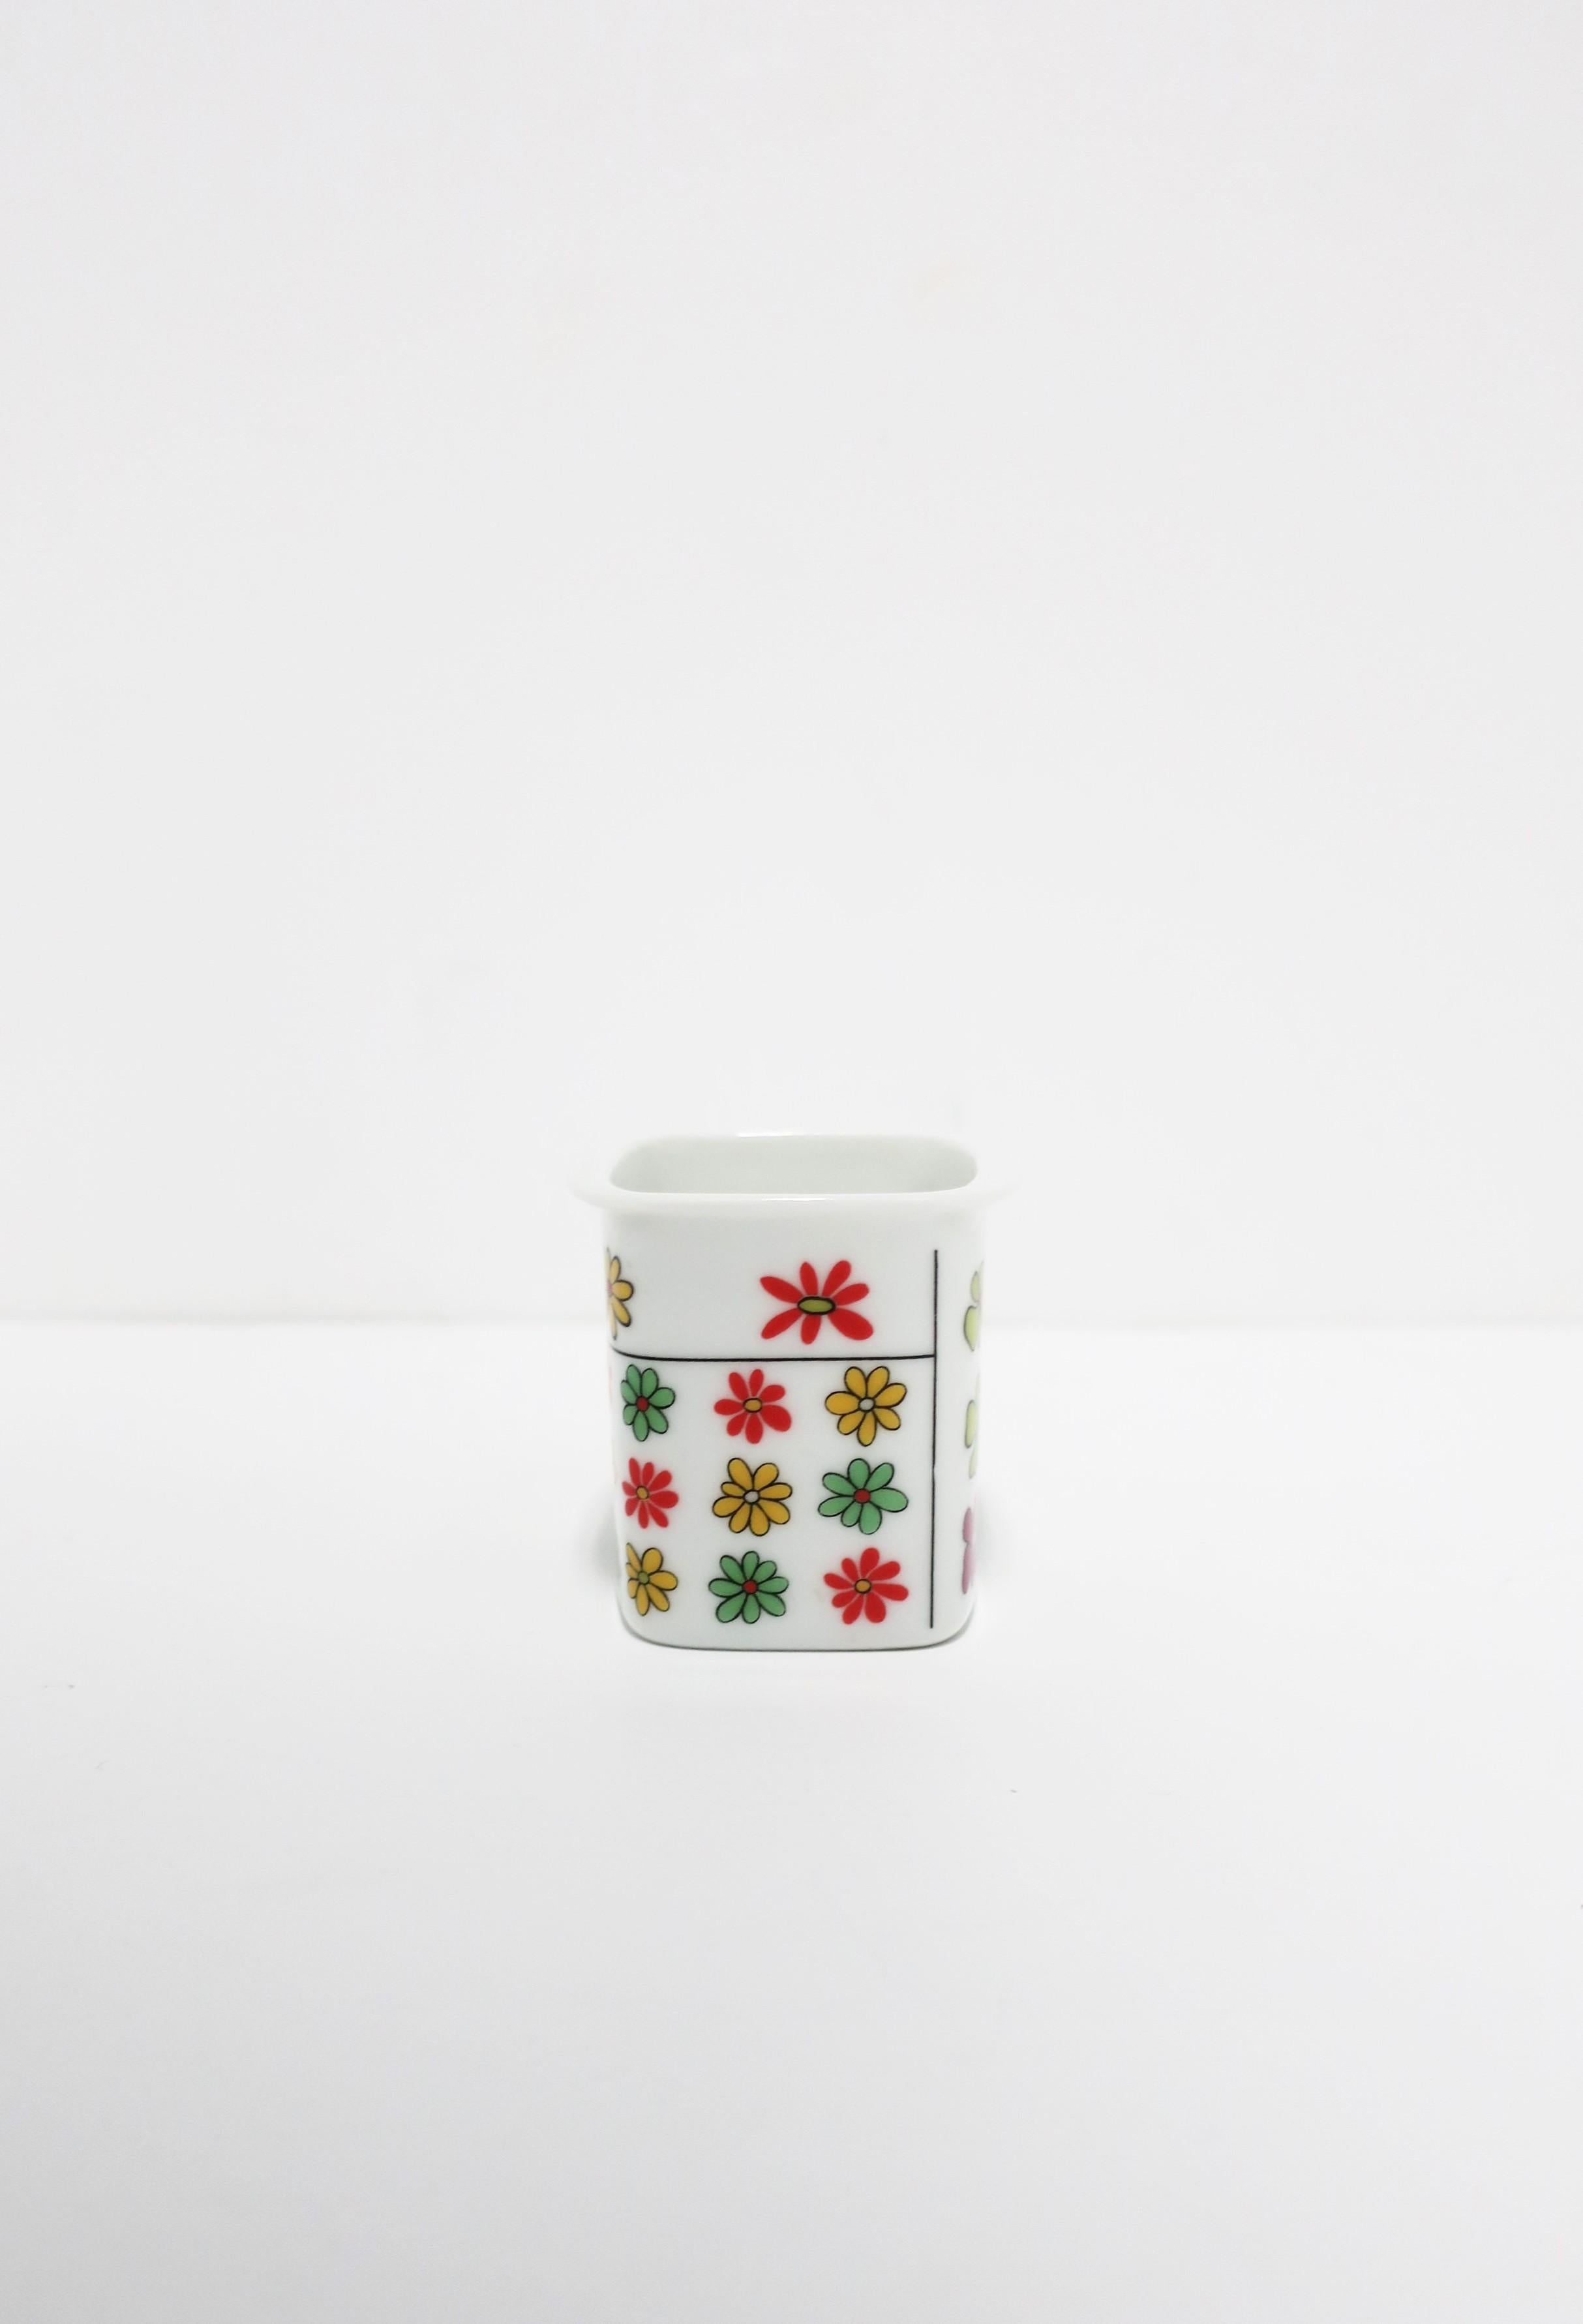 Glazed Emilio Pucci & Hans Theo Baumann Porcelain Cig Vessel for Rosenthal Studio-Line For Sale